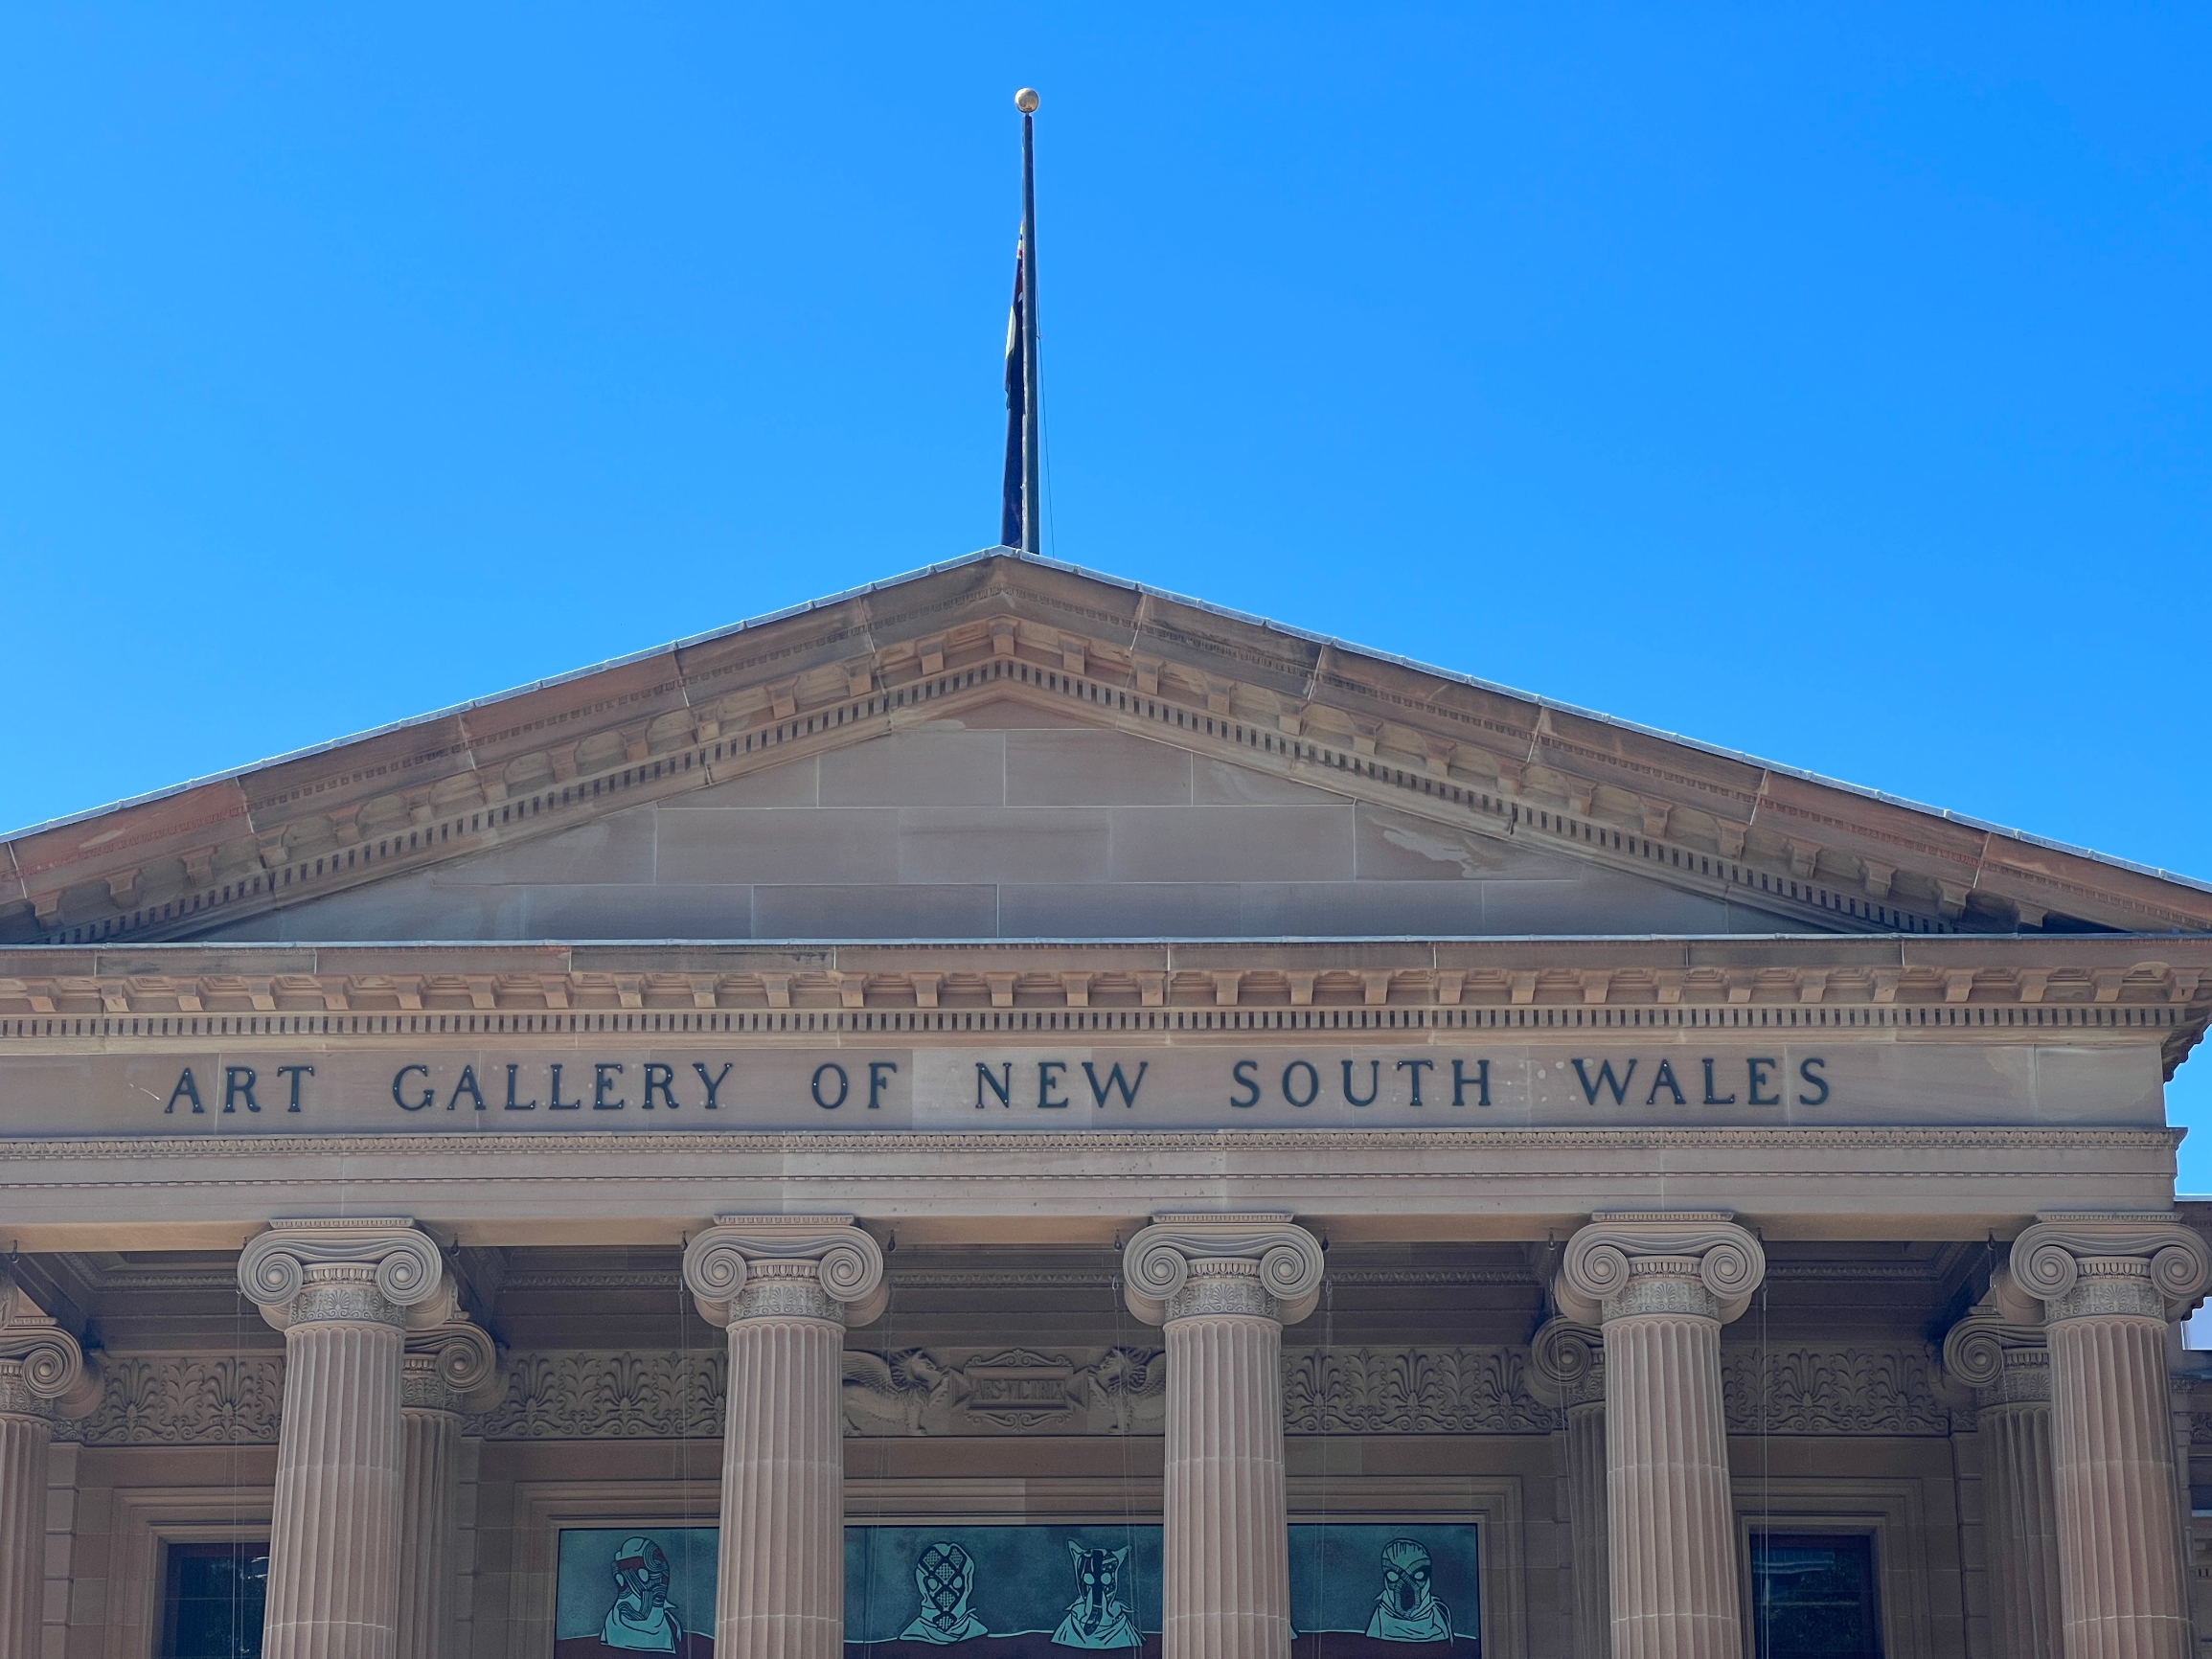 我走进新南威尔士美术馆，立刻被它宏伟的建筑和庄严的氛围所吸引。馆内收藏了丰富多样的艺术作品，每一件都